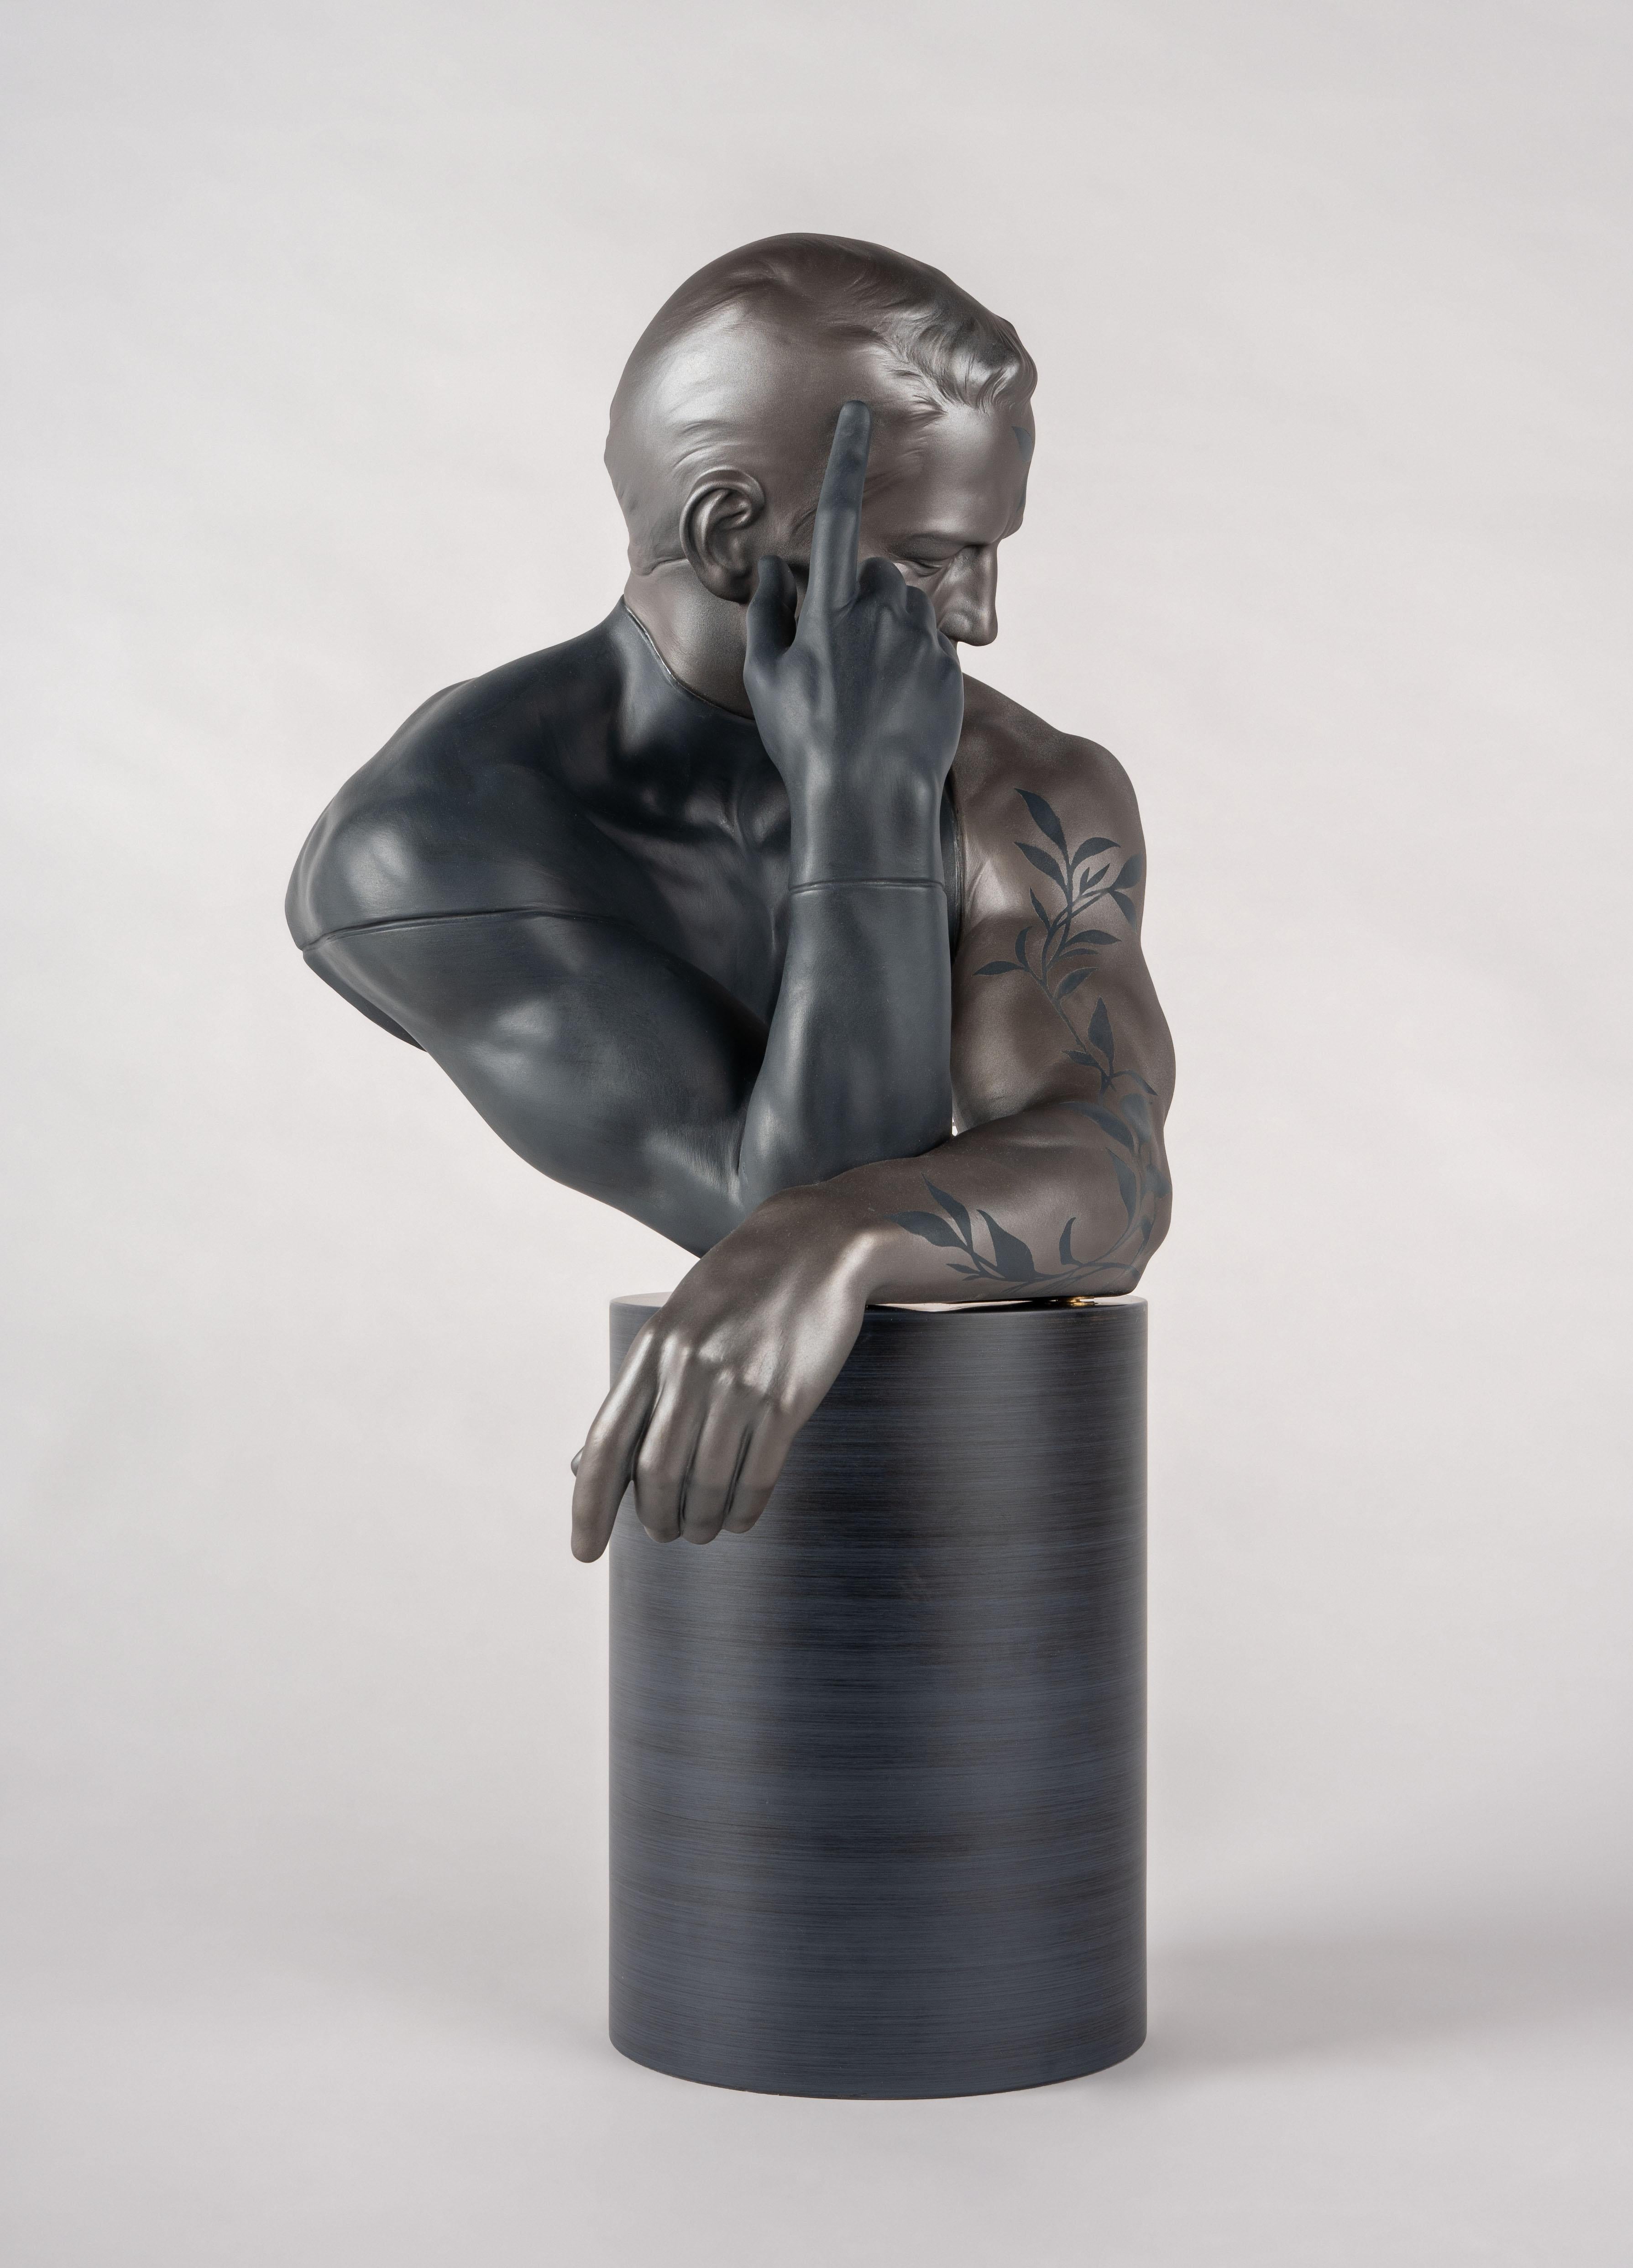 Porzellanskulptur, inspiriert von der Verbindung zwischen Mensch und Natur. Diese männliche Porzellanbüste zeigt einen Mann in nachdenklicher, nach innen gerichteter Pose. Sie erinnert uns an die wesentliche Verbindung zwischen Mensch und Natur, an